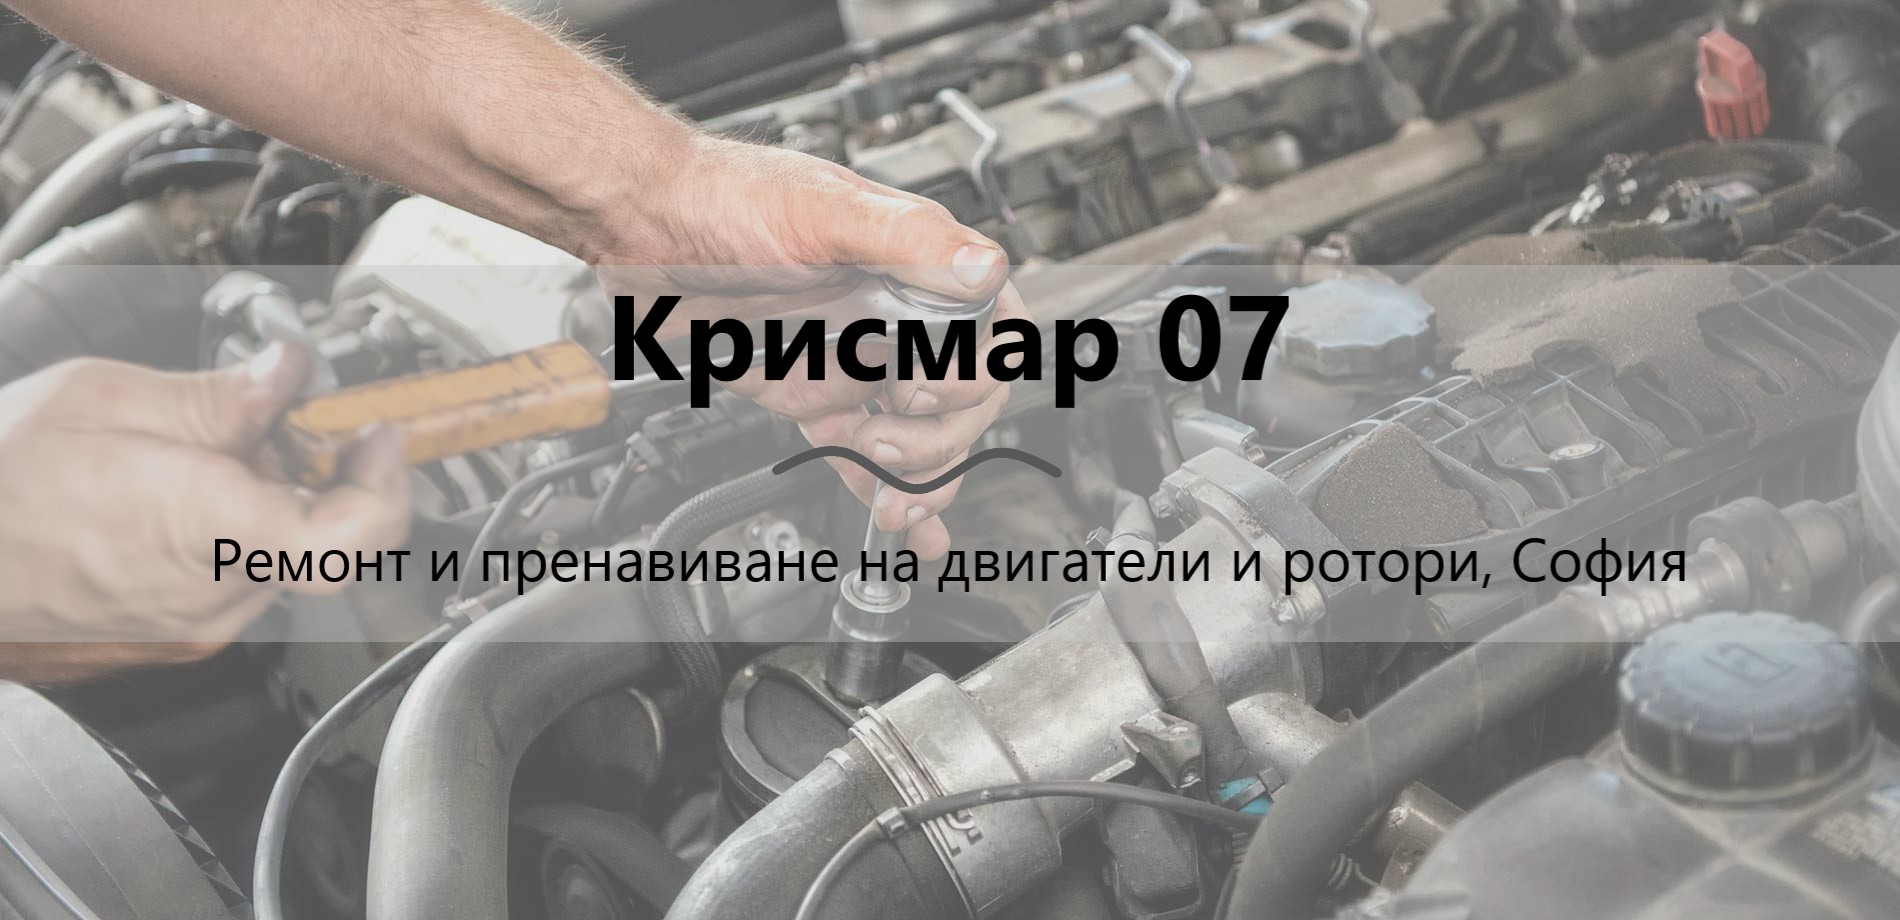 Image for "Крисмар 07" | Ремонт и пренавиване на двигатели и ротори, София